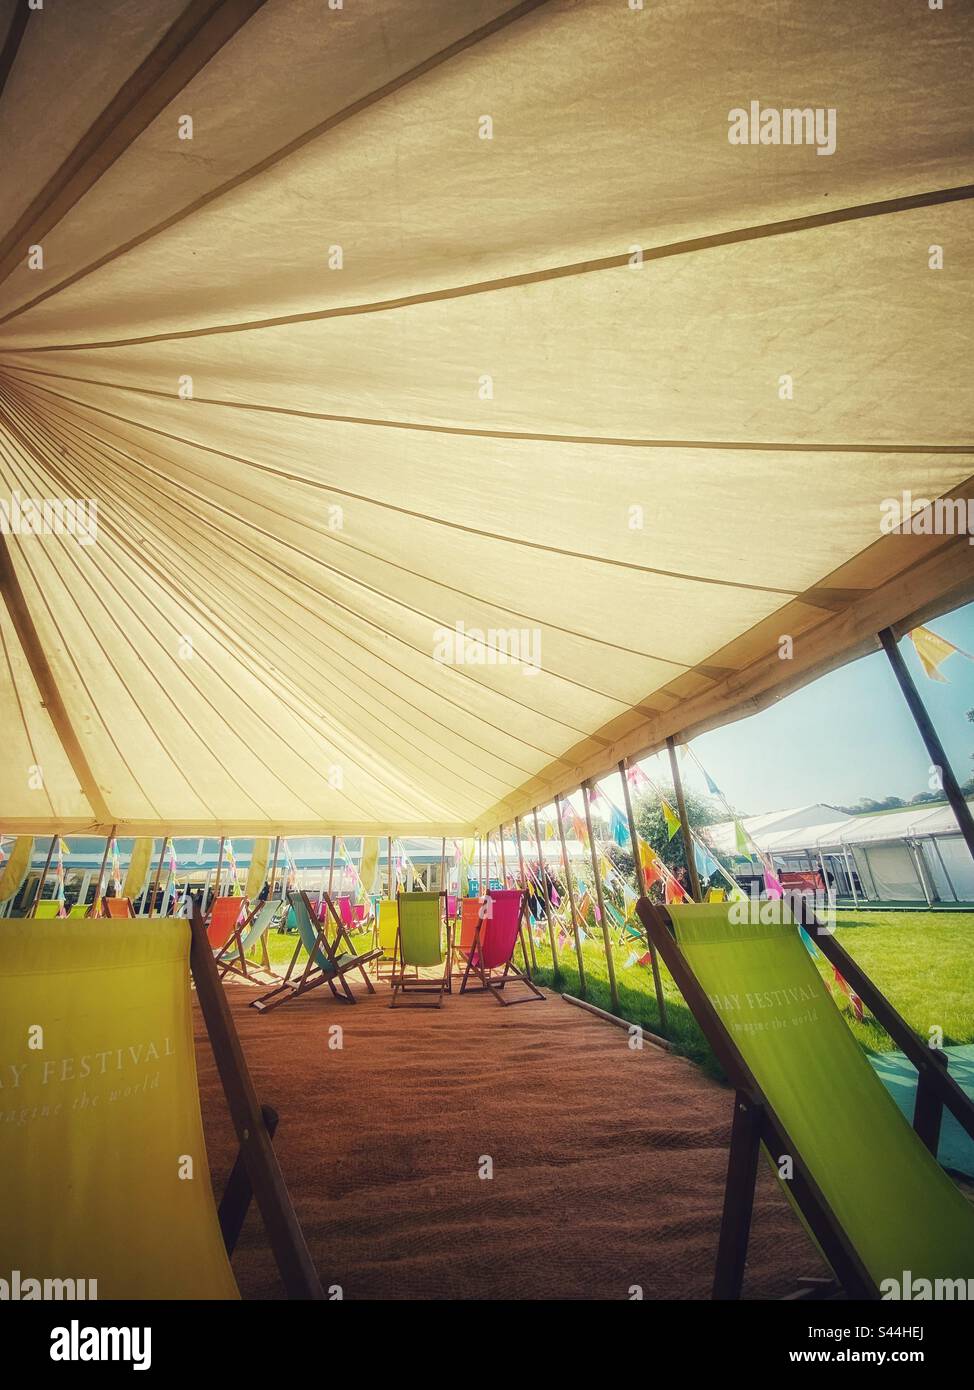 Ein Foto in einem Zelt beim Hay Festival. Liegestühle, Jurten und Leute, die die Sonne genießen Stockfoto